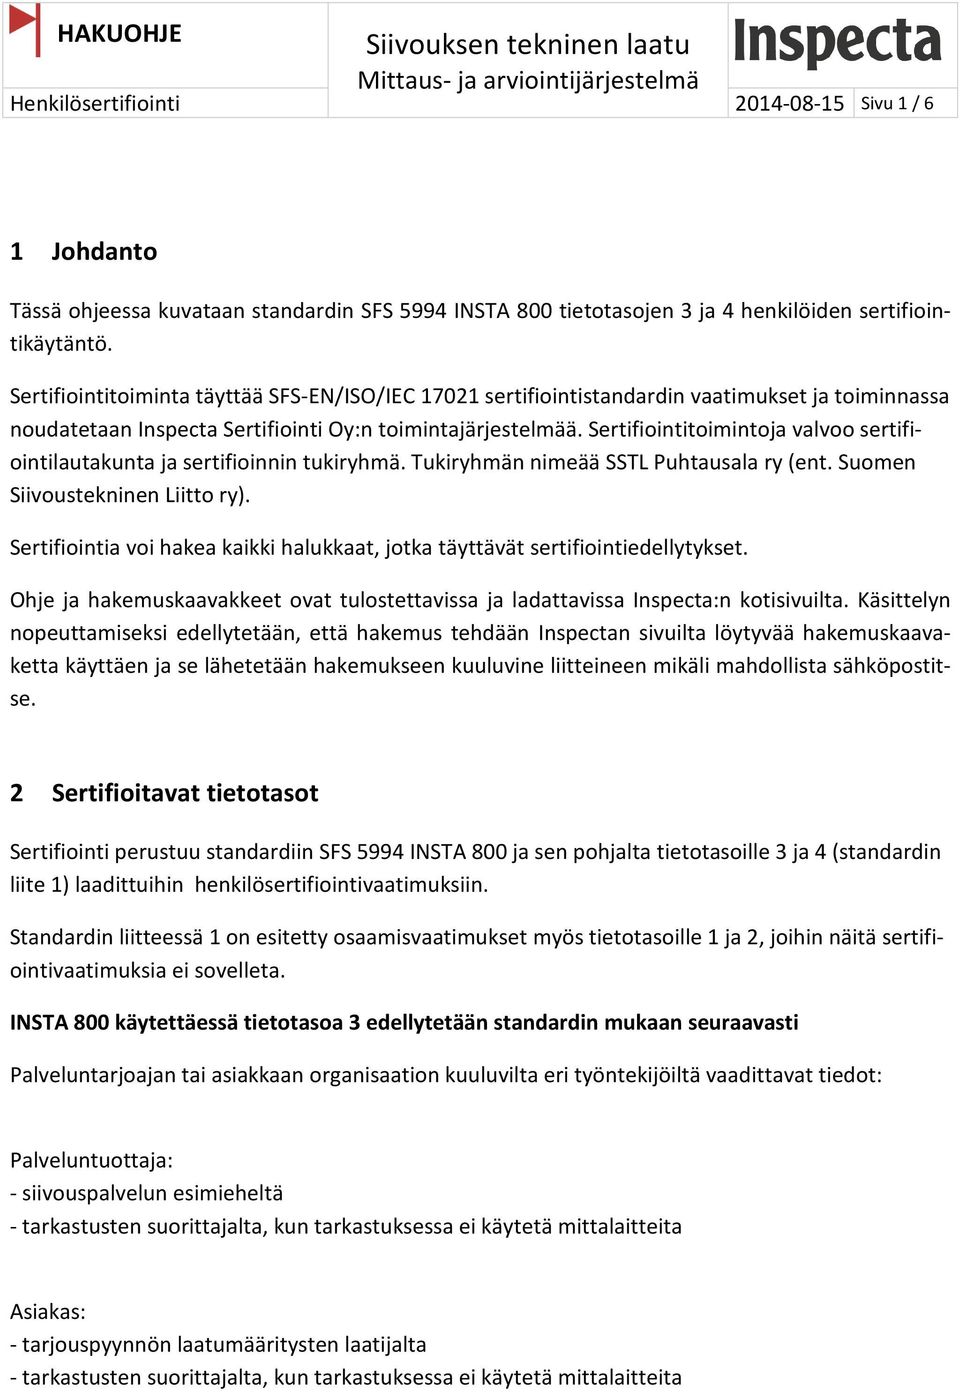 Sertifiointitoimintoja valvoo sertifiointilautakunta ja sertifioinnin tukiryhmä. Tukiryhmän nimeää SSTL Puhtausala ry (ent. Suomen Siivoustekninen Liitto ry).